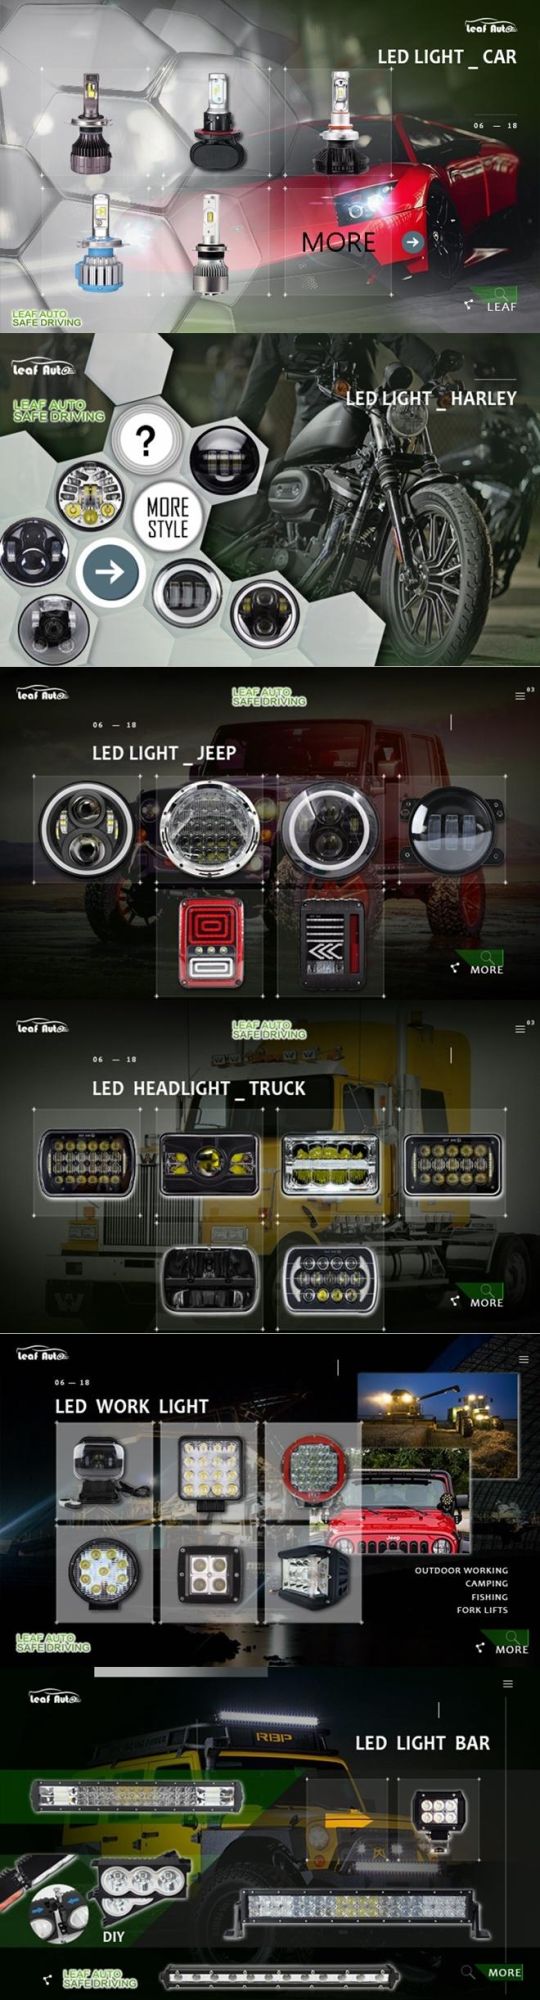 T1 H4 Turbo LED Headlight Kit 72W 8000lm H1 H3 H7 H8 H9 H11 Hb3 Hb4 Fun LED Bulb Light Fog Light 2020 Turbo Super Bright Car Headlight